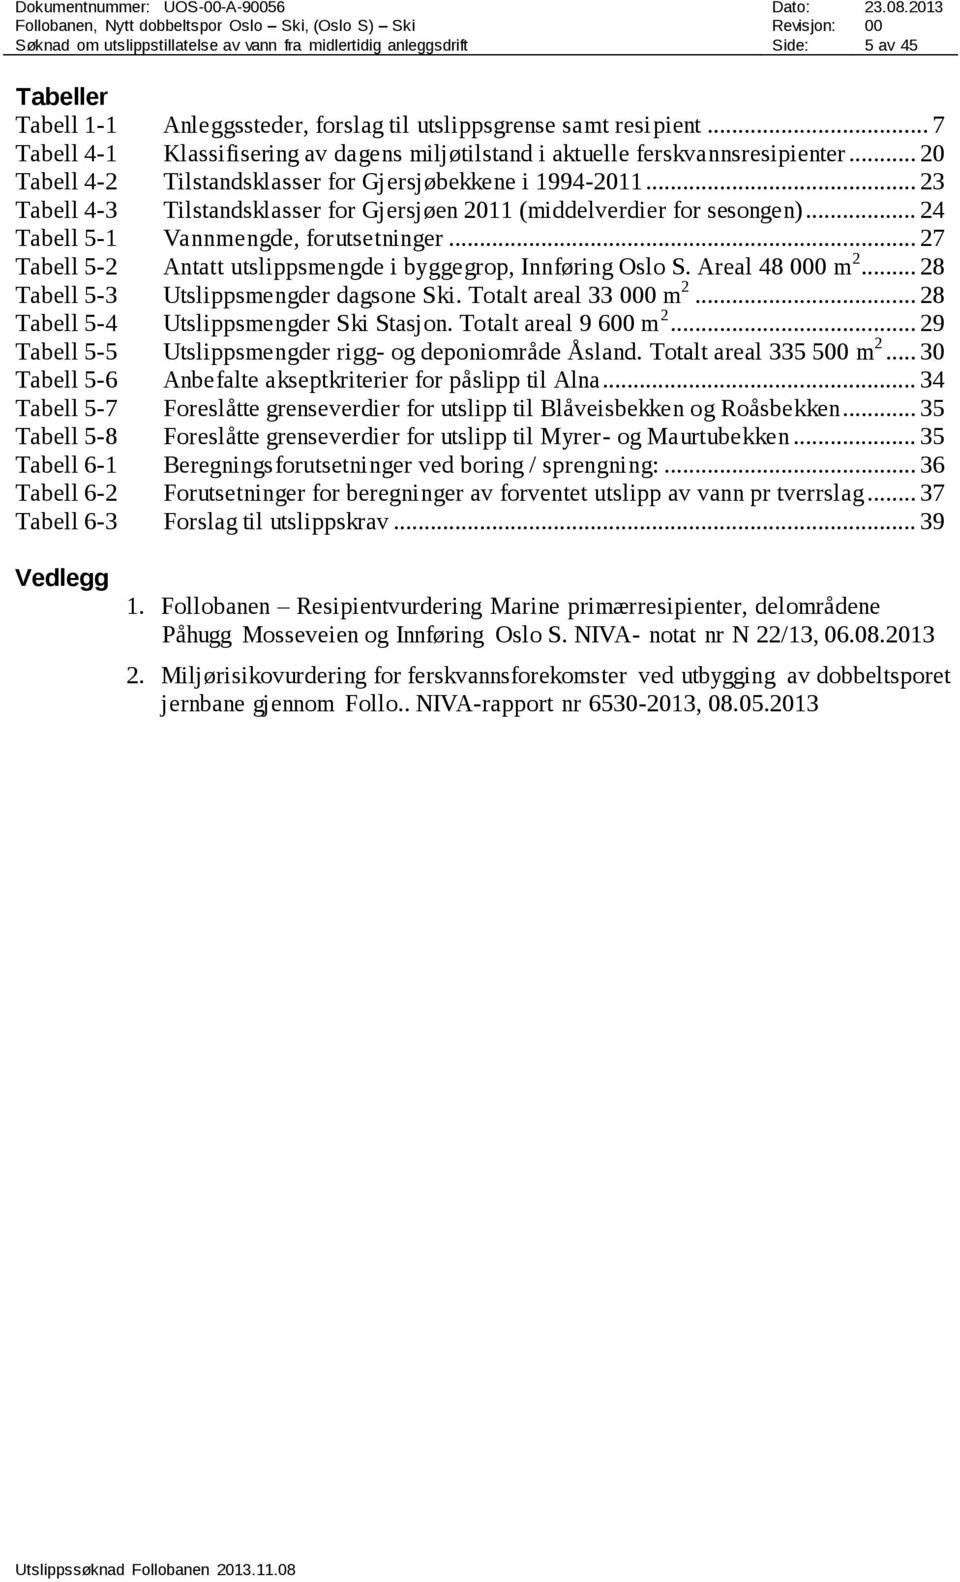 .. 23 Tabell 4-3 Tilstandsklasser for Gjersjøen 2011 (middelverdier for sesongen)... 24 Tabell 5-1 Vannmengde, forutsetninger... 27 Tabell 5-2 Antatt utslippsmengde i byggegrop, Innføring Oslo S.